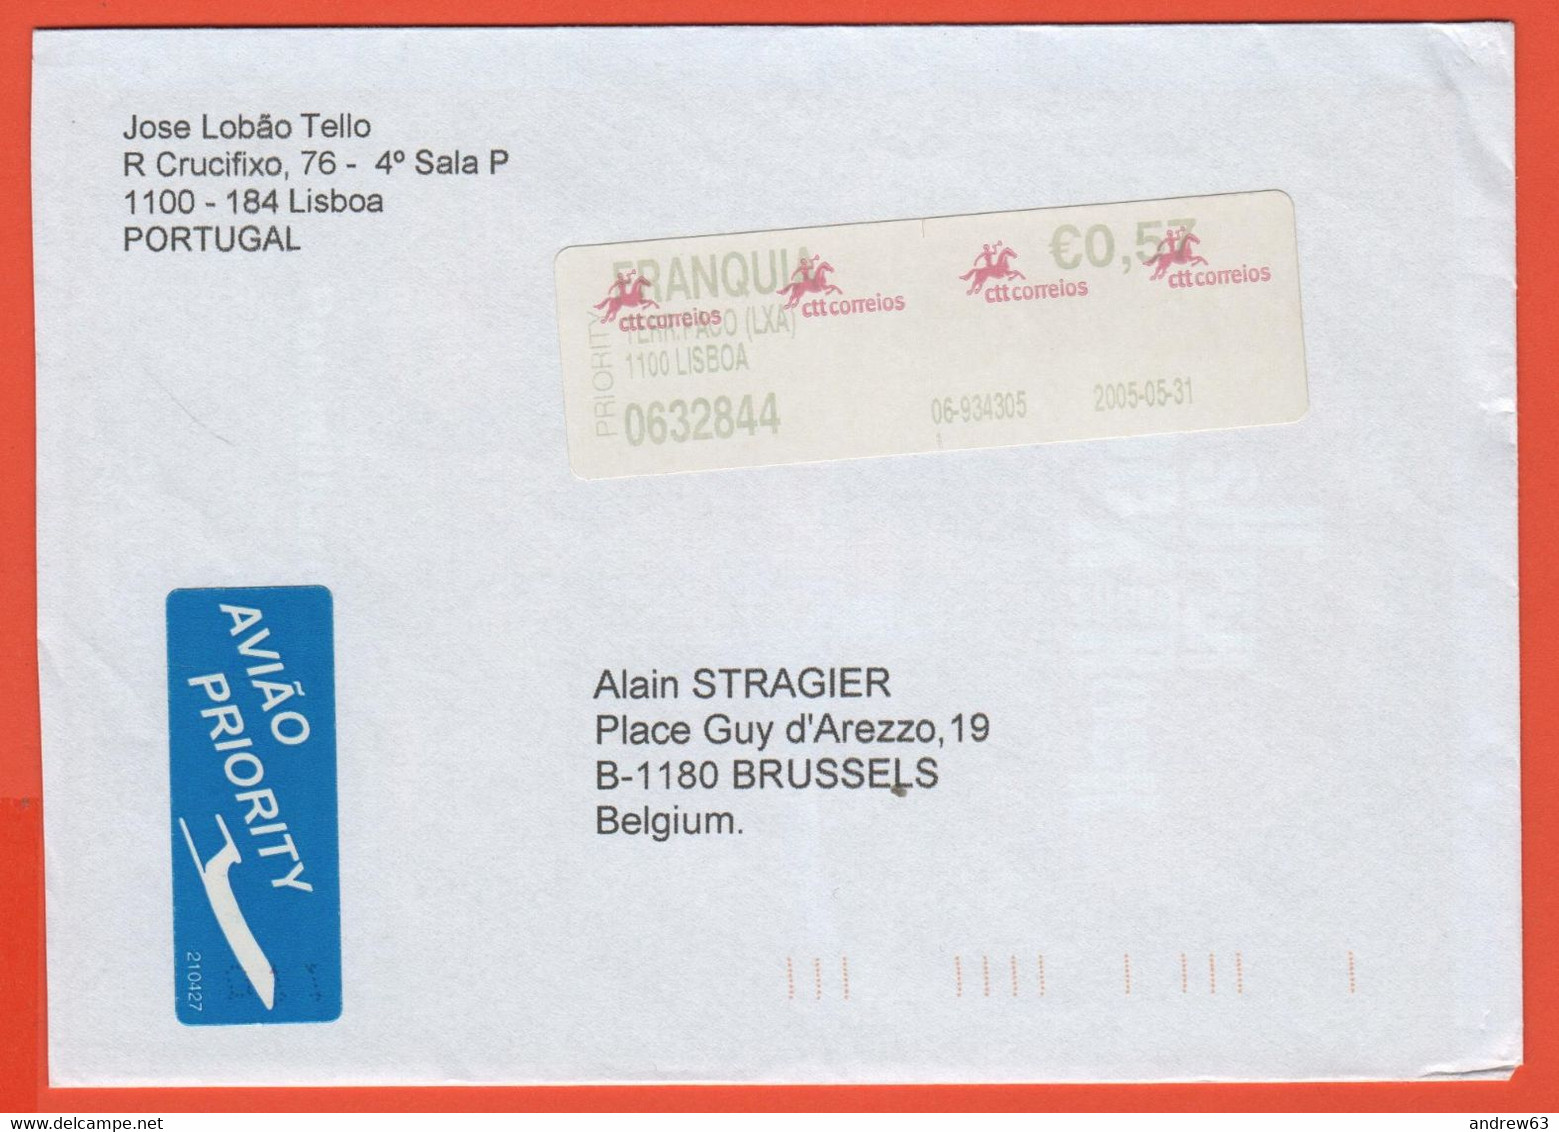 PORTOGALLO - PORTUGAL - 2005 - 0,57€ Postage Paid - Viaggiata Da Lisboa Per Bruxelles, Belgium - Storia Postale